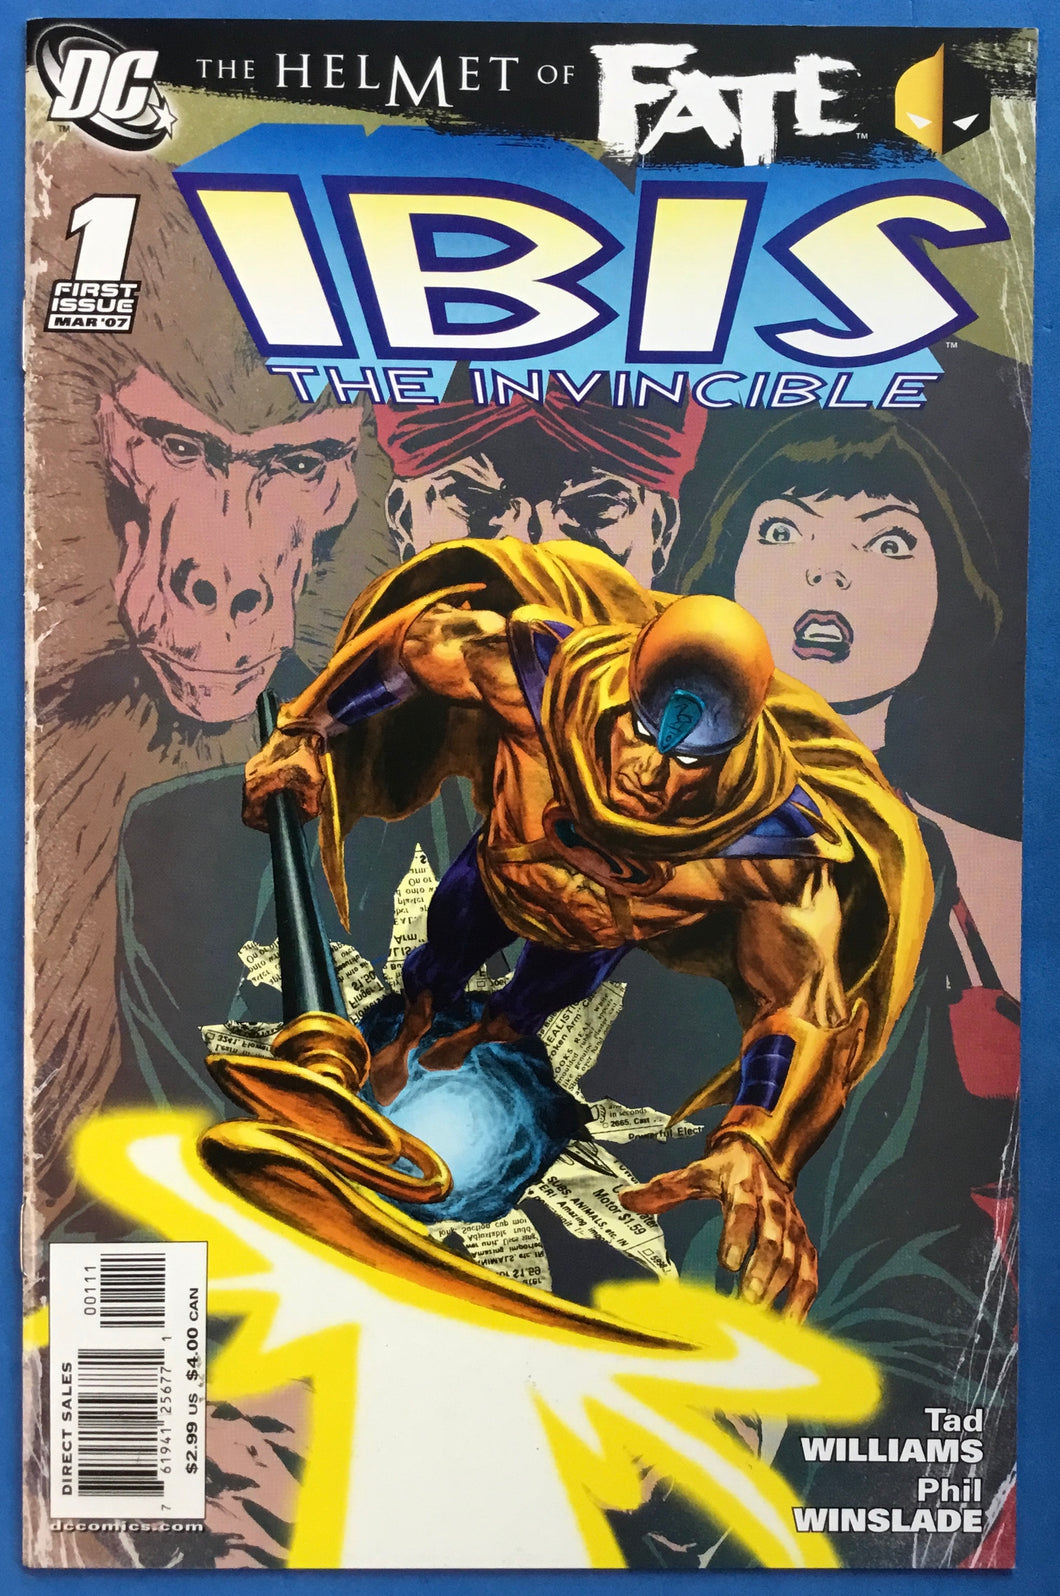 The Helmet of Fate: Ibis the Invincible No. #1 2007 DC Comics